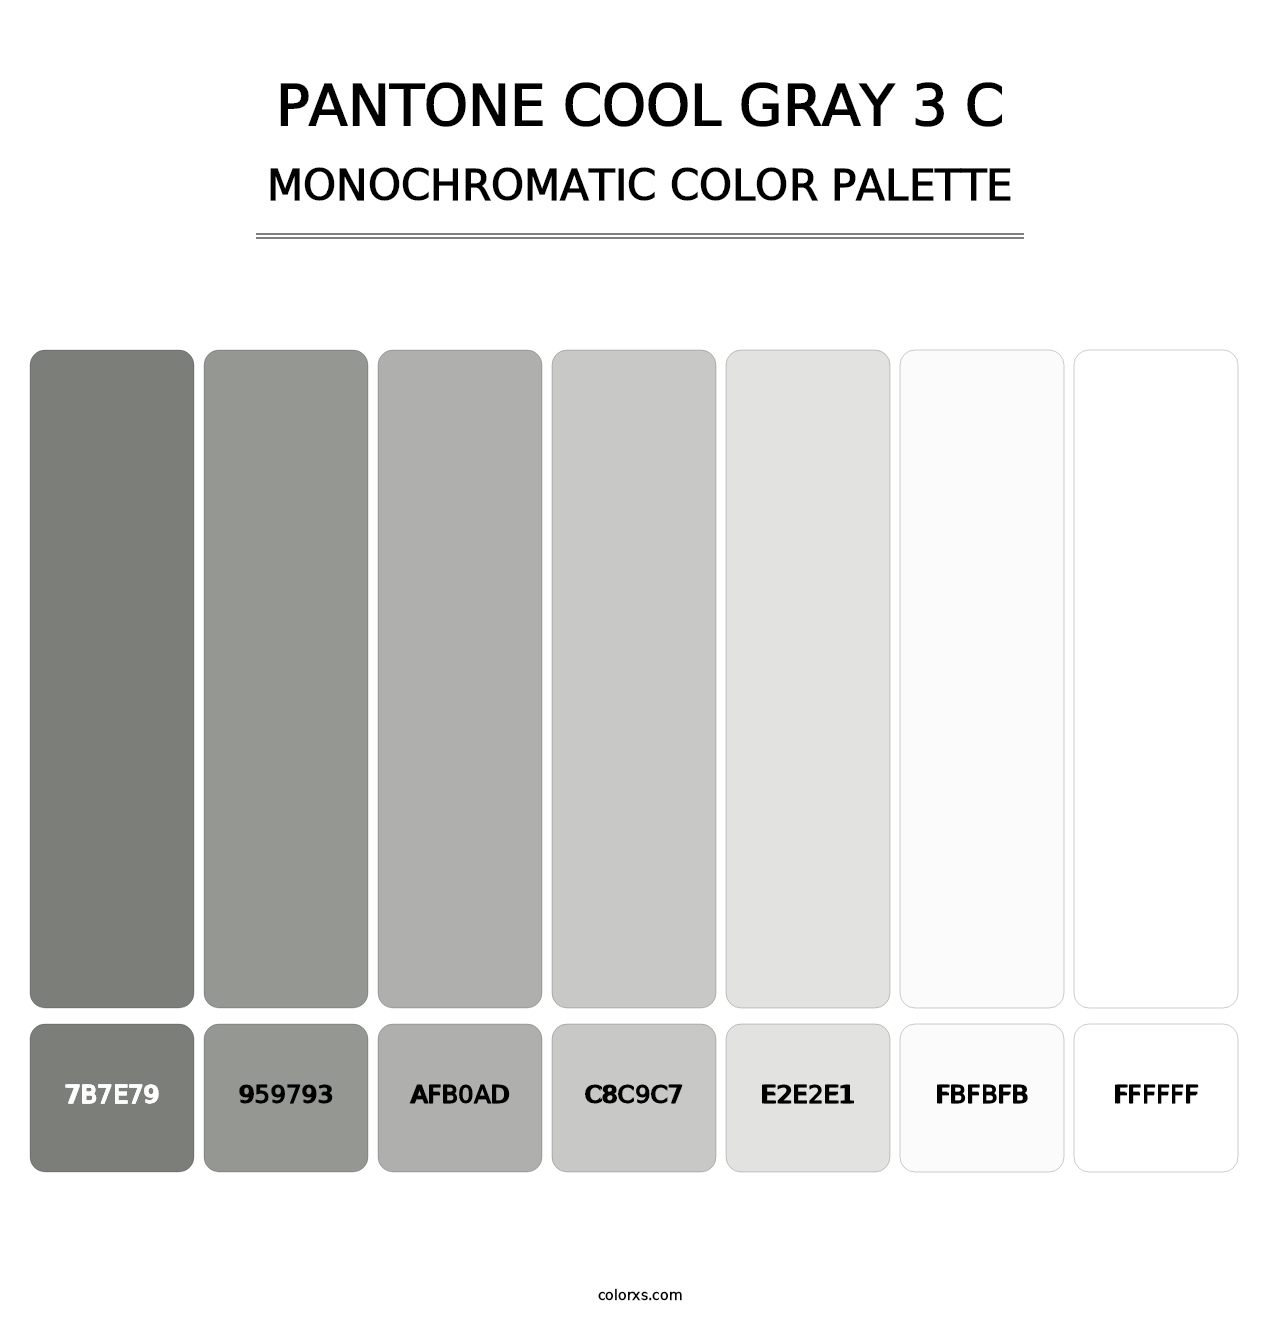 PANTONE Cool Gray 3 C - Monochromatic Color Palette